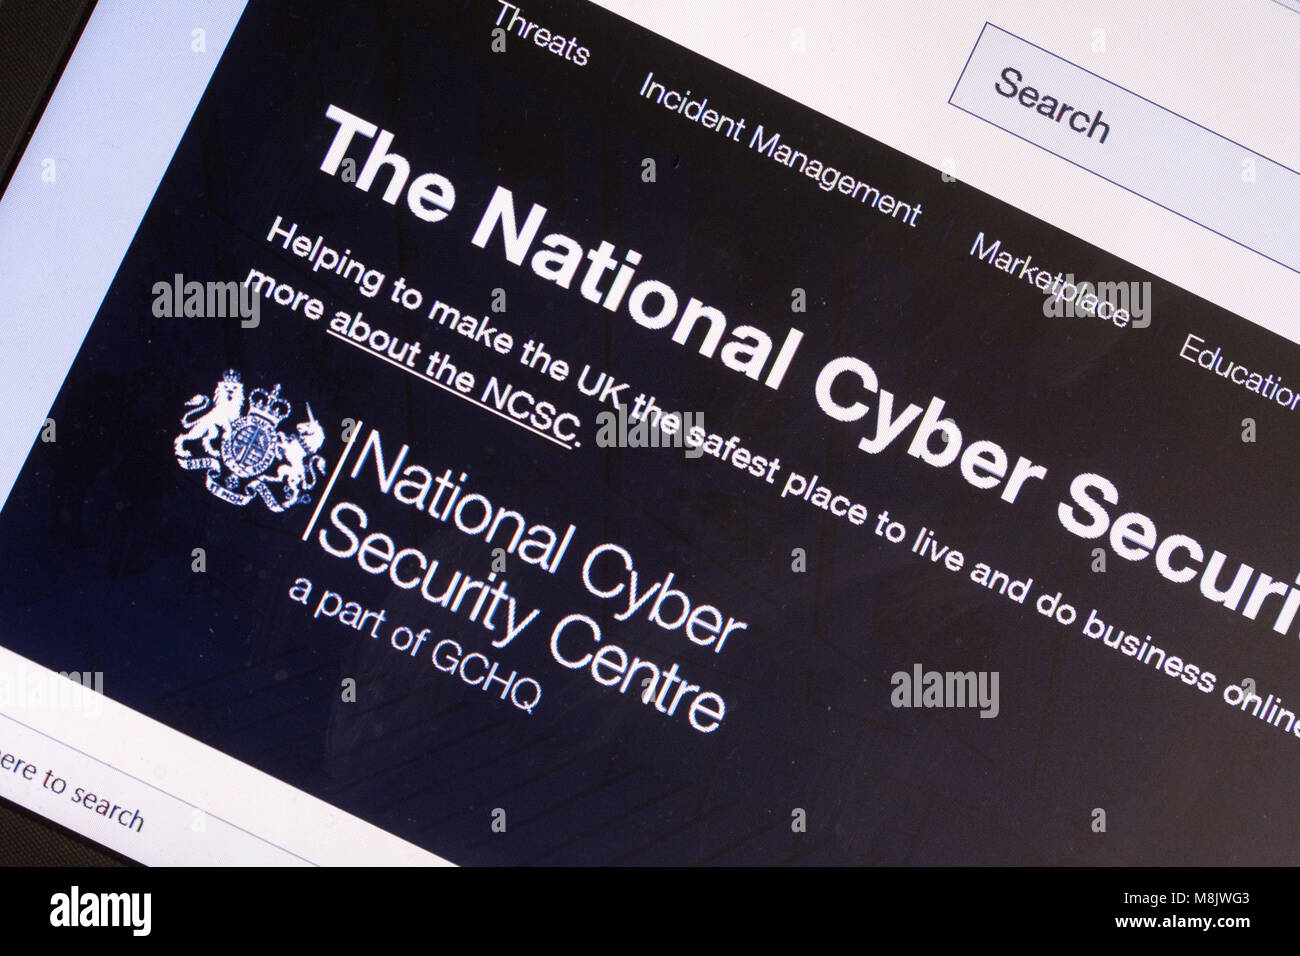 Capture d'écran de l'ordinateur d'NCSC.gov site (Le National Cyber Security Center) Banque D'Images